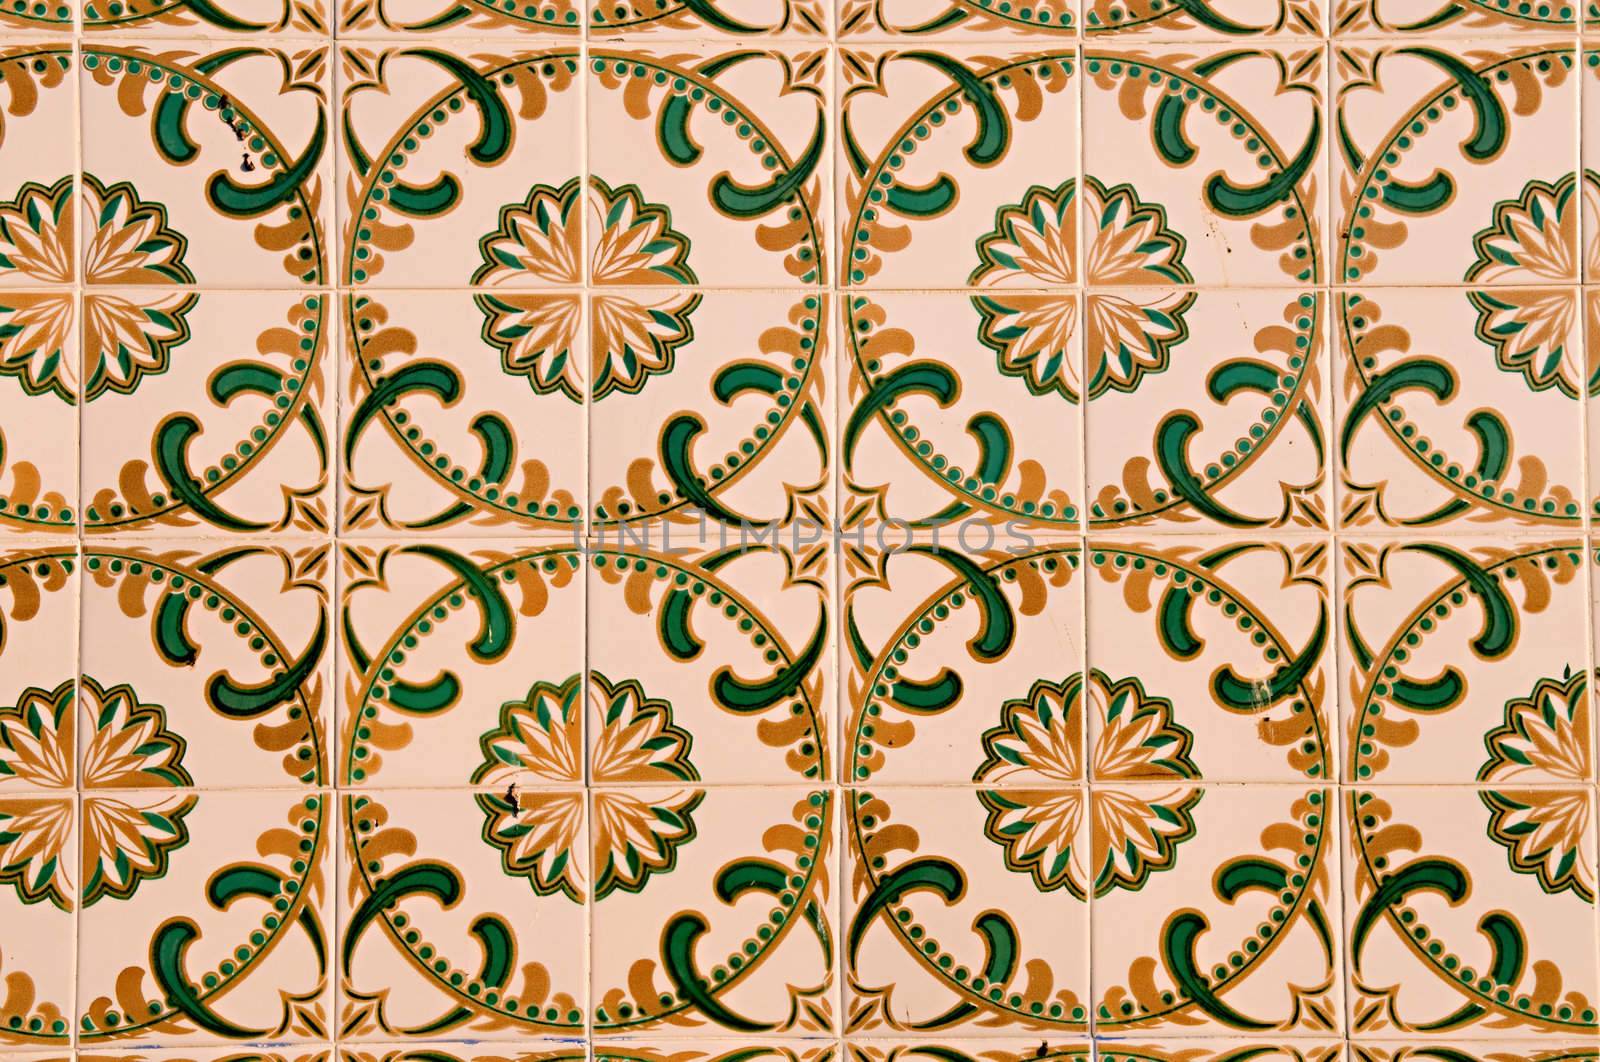 Portuguese tiles by tito